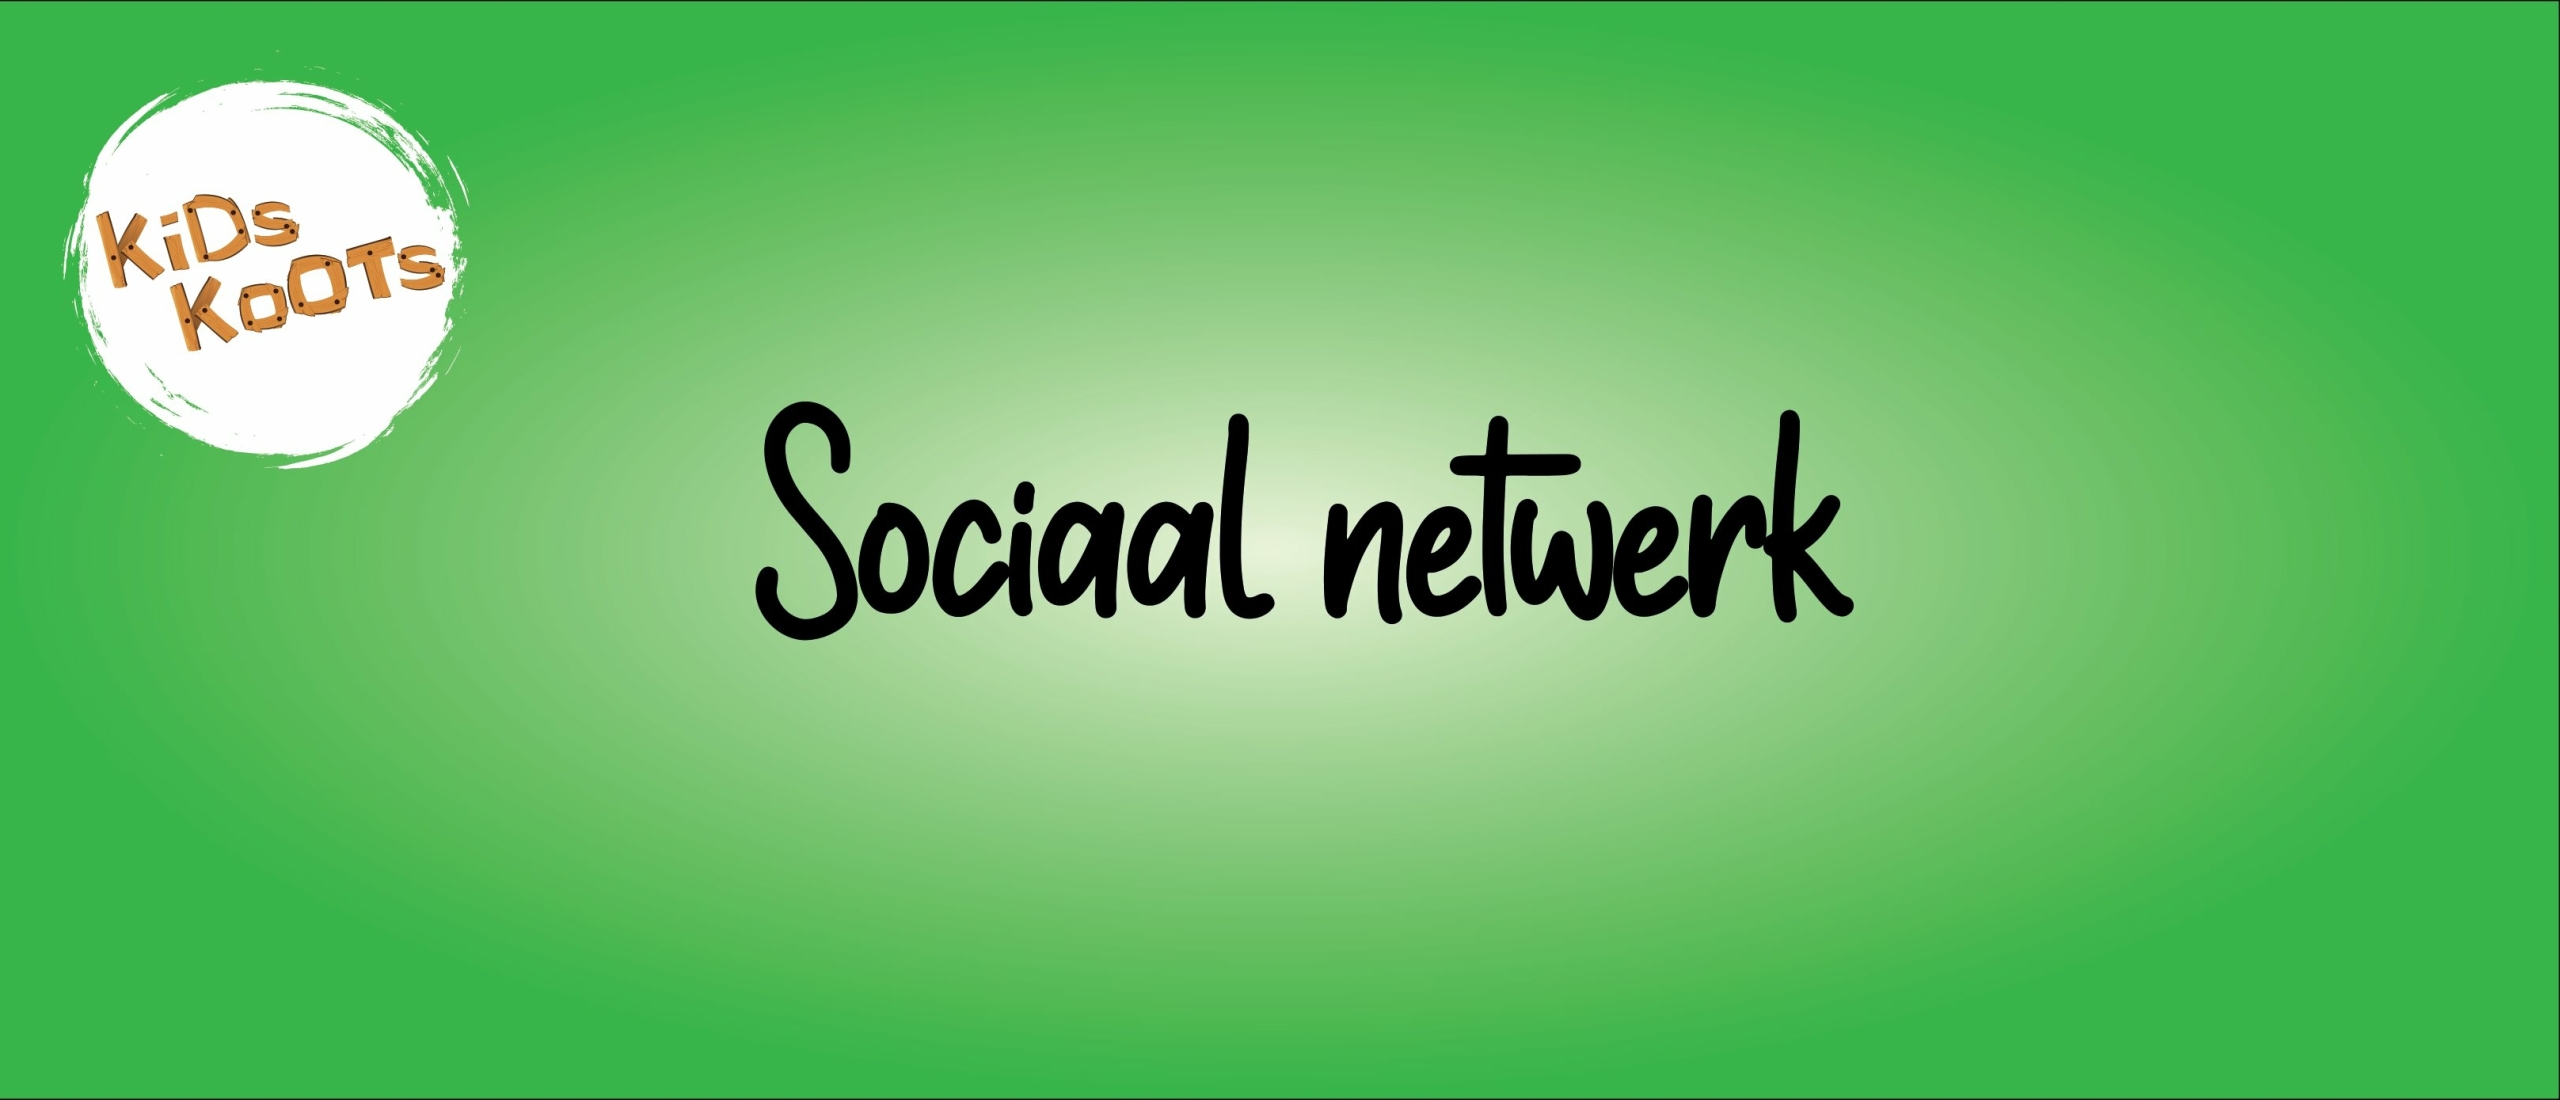 Sociaal netwerk